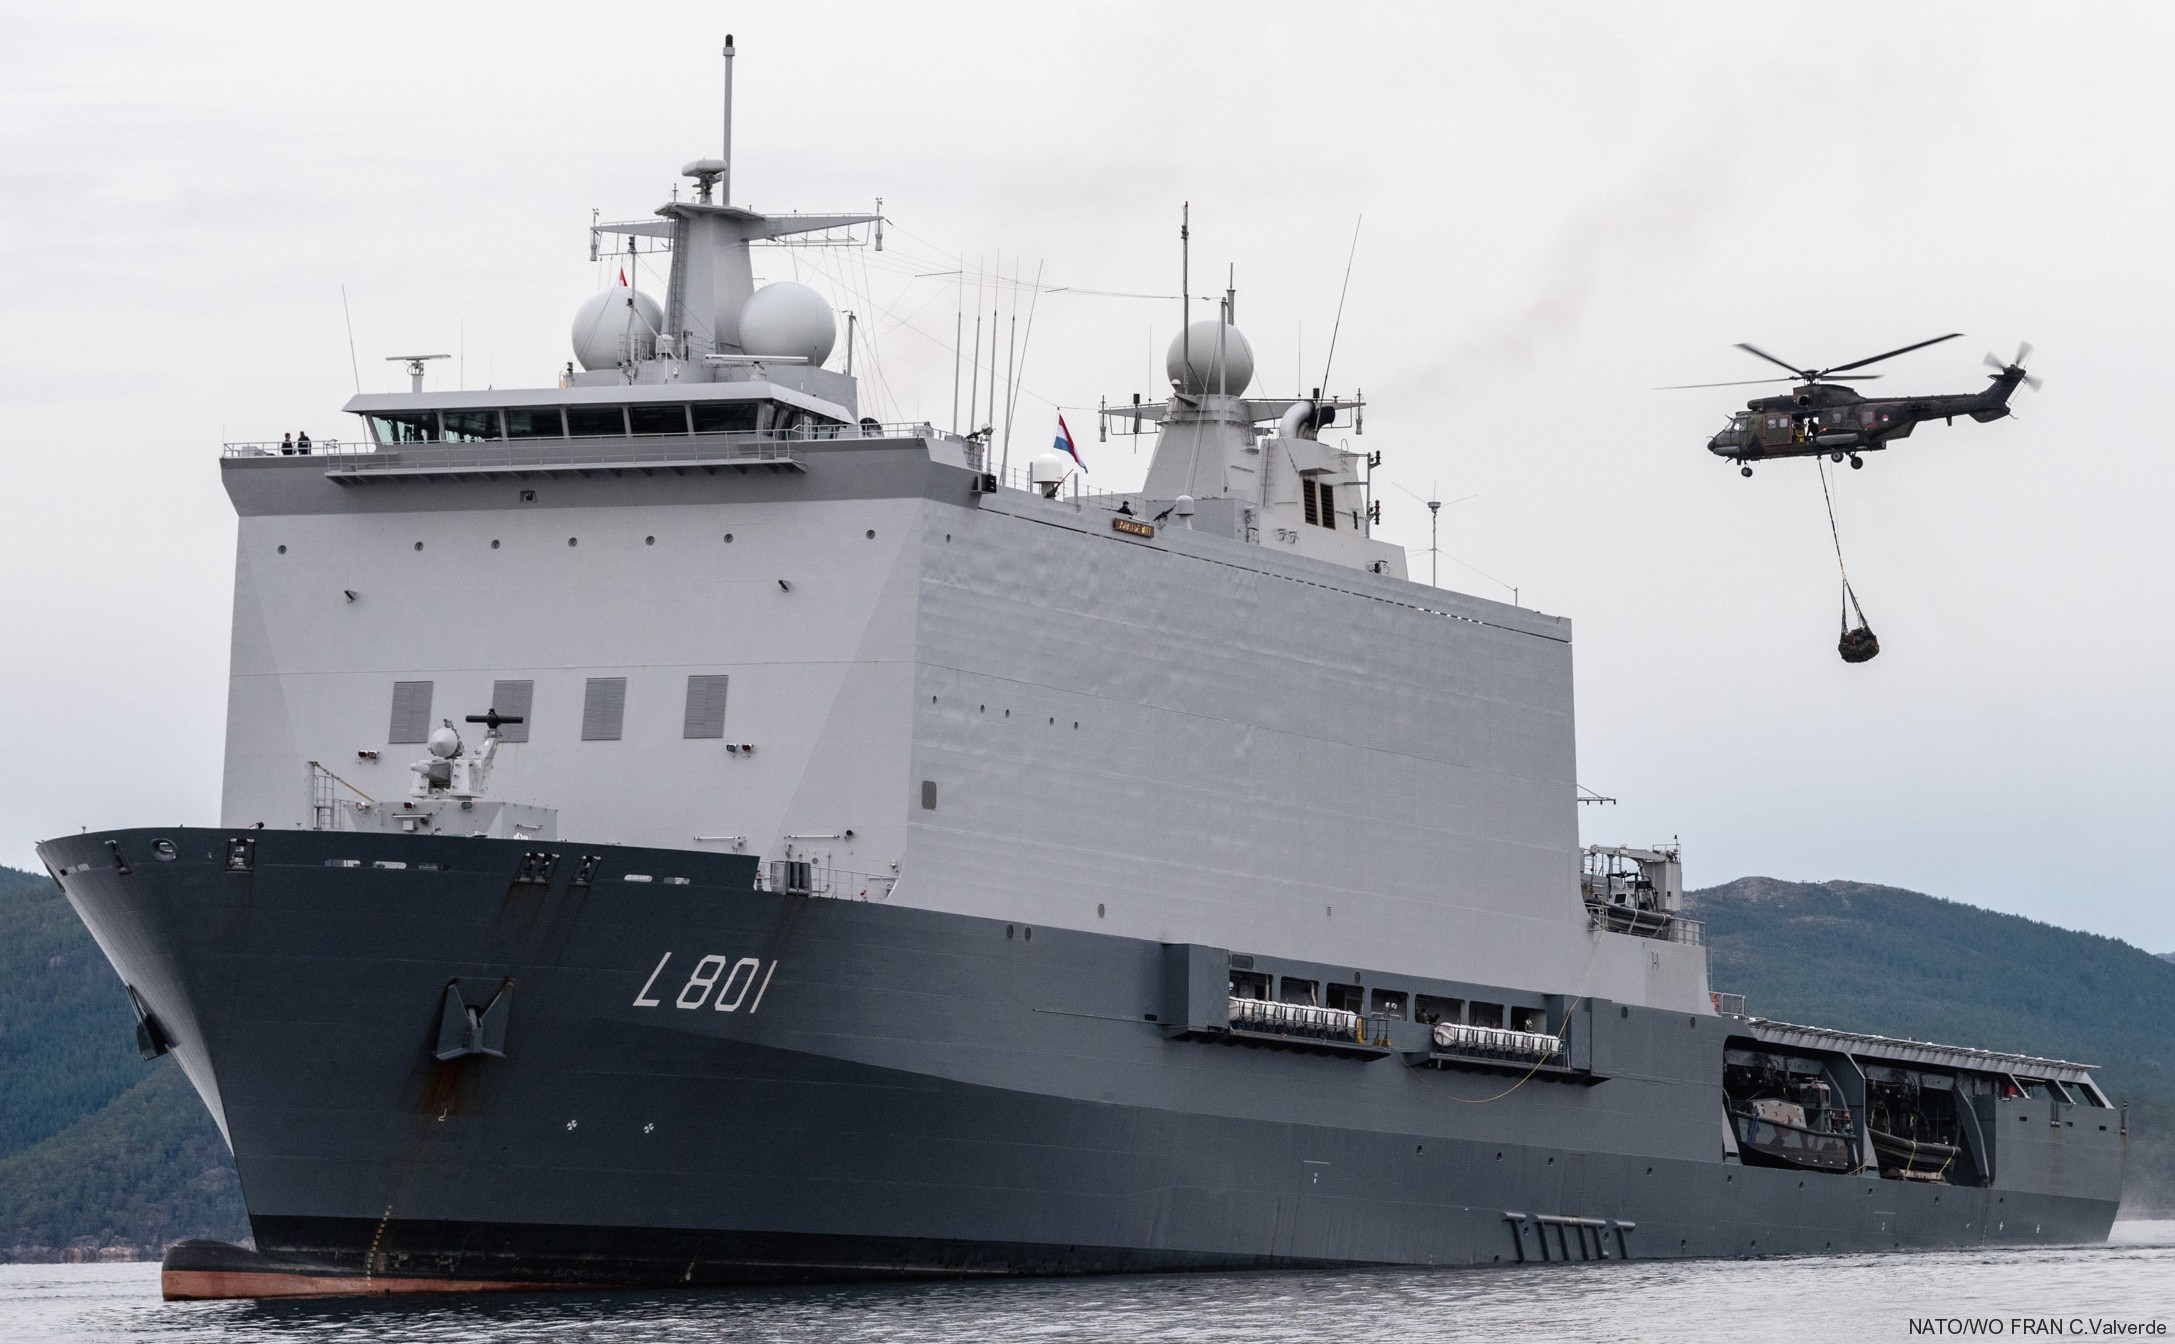 l-801 hnlms johan de witt amphibious ship landing platform dock lpd royal netherlands navy 19